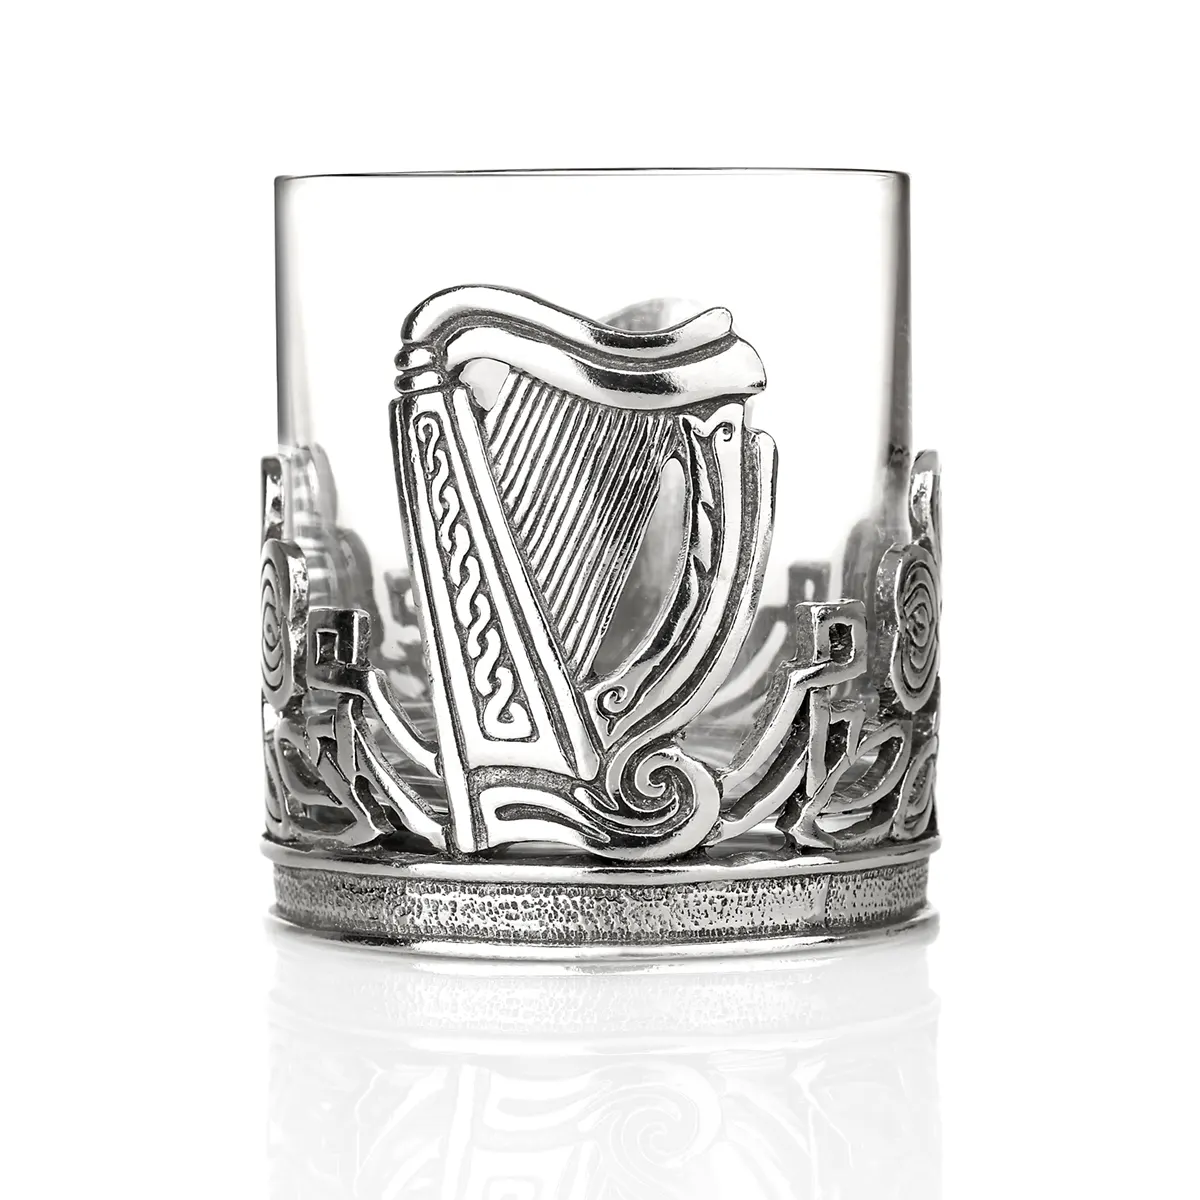 The Irish Whiskey Tumbler - Irisches Whiskeyglas handgefertigt aus Glas und Zinn